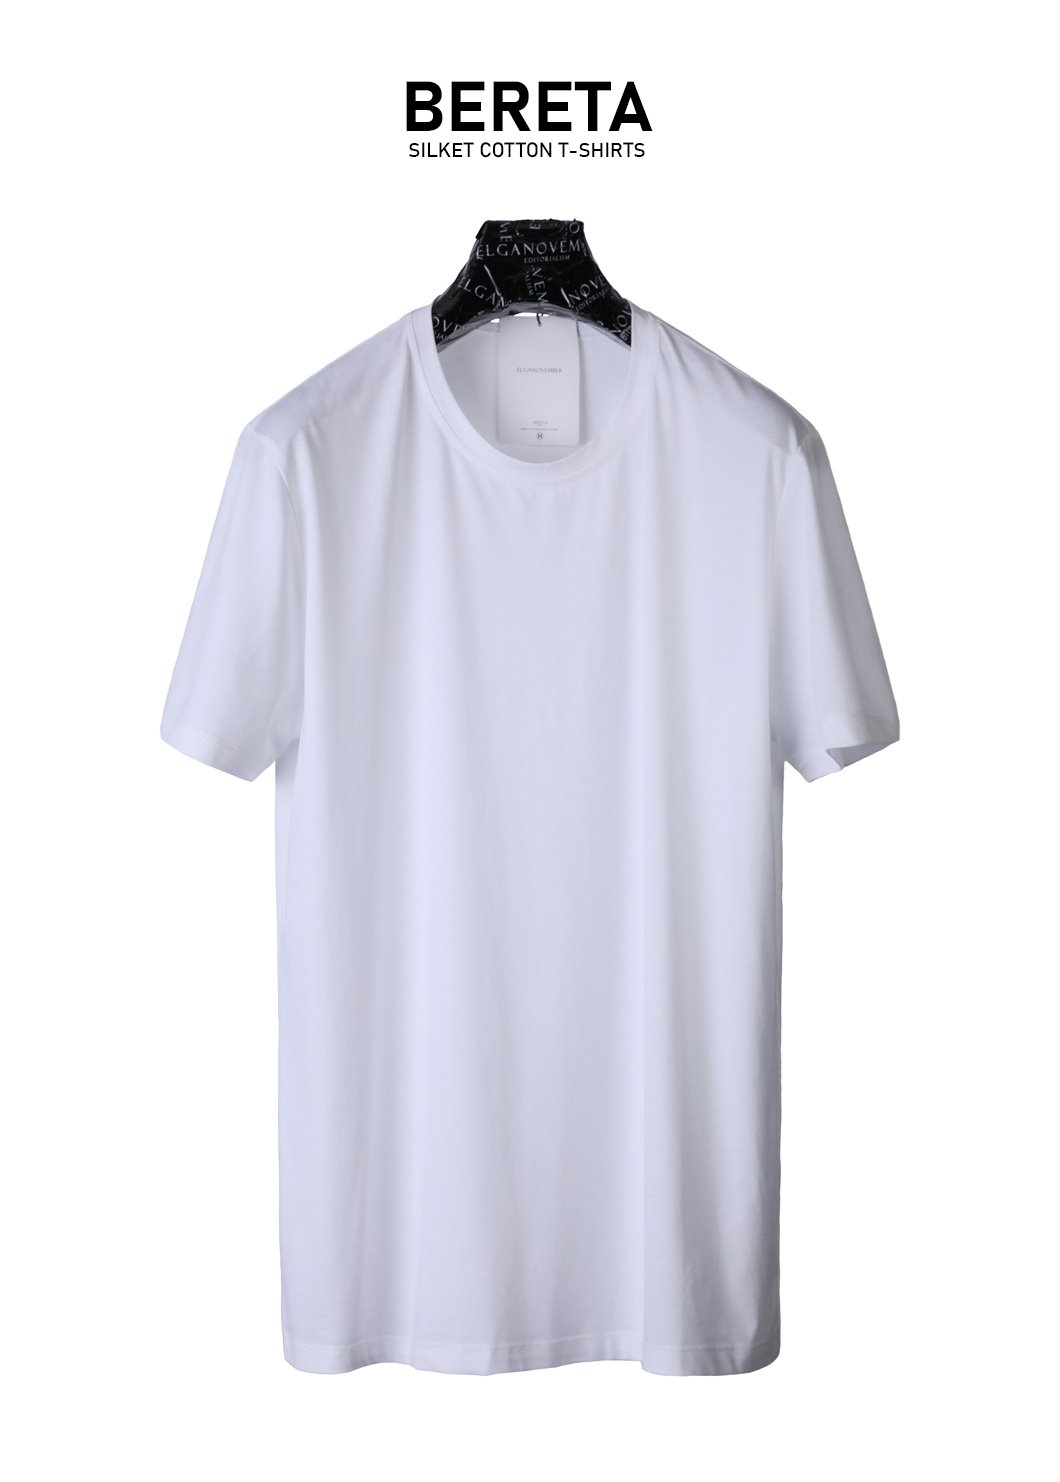 BERETA Silket Cotton T-Shirts-2Color